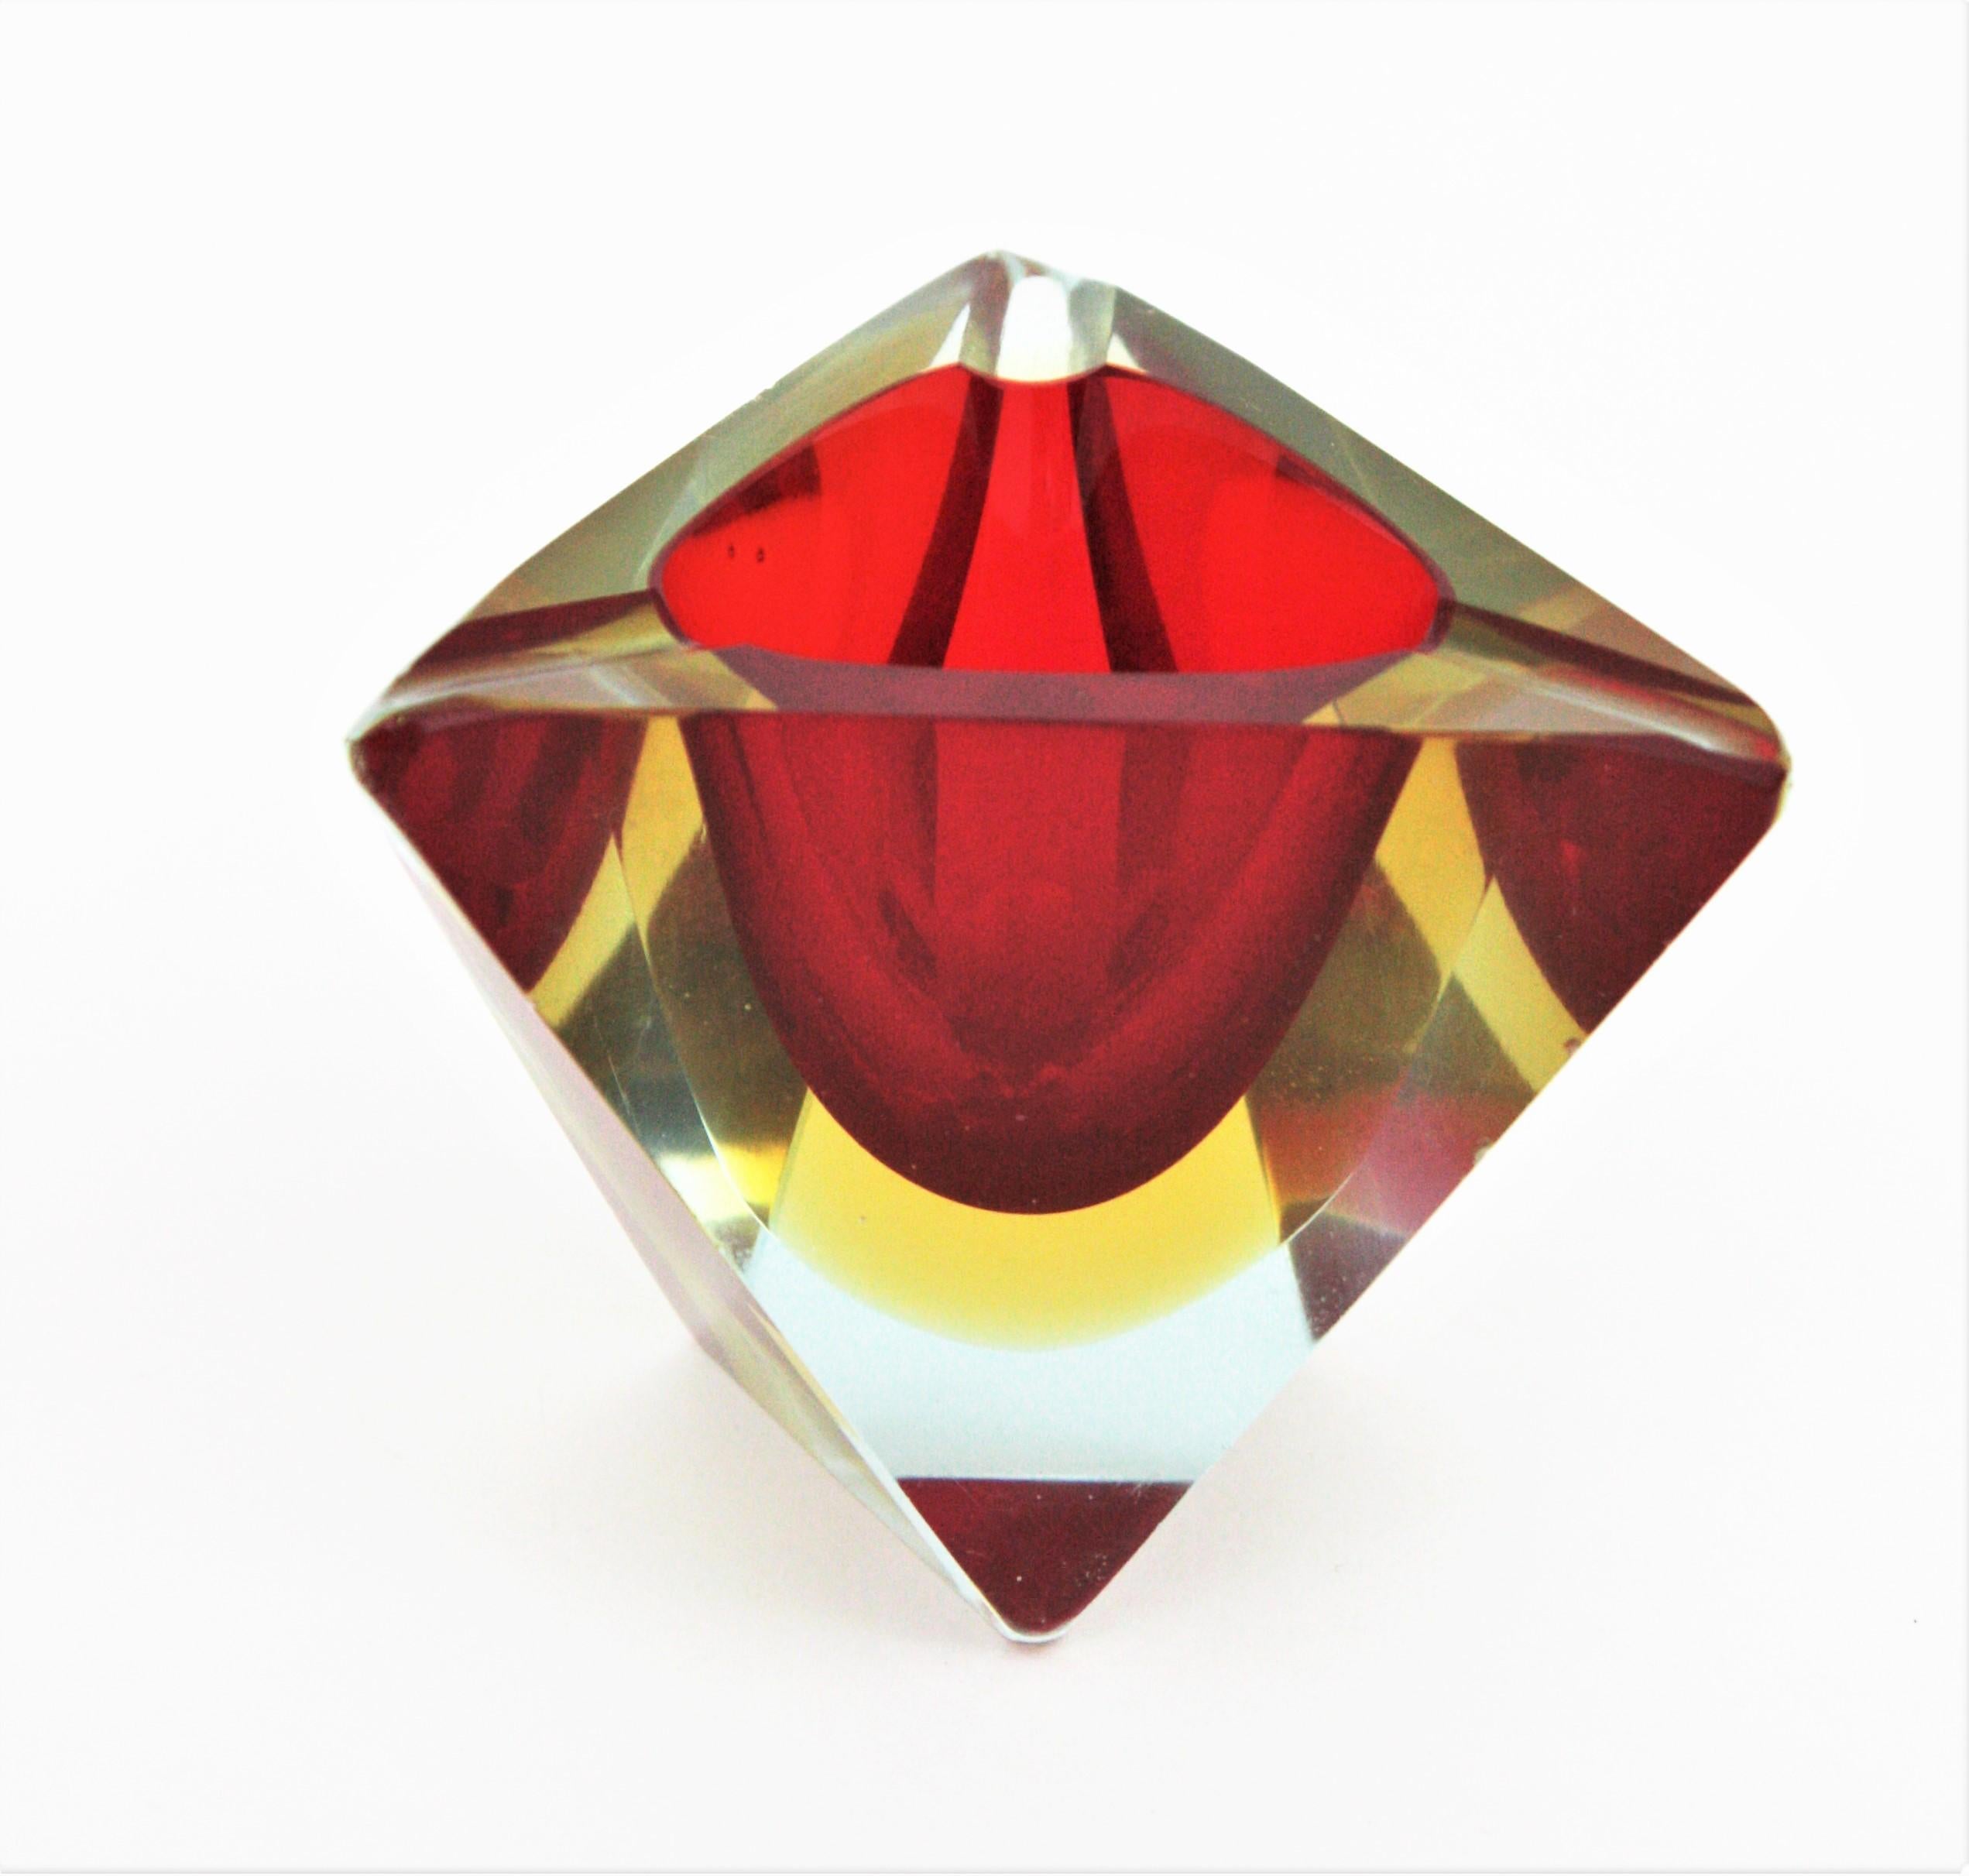 Cendrier triangulaire en verre de Murano facetté Sommerso. Attribué à Flavio Poli, Italie, années 1950.
Verre rouge et jaune encastré dans du verre transparent.
Il peut également être utilisé comme petite bague ou coupe à bijoux.
Les bols en verre